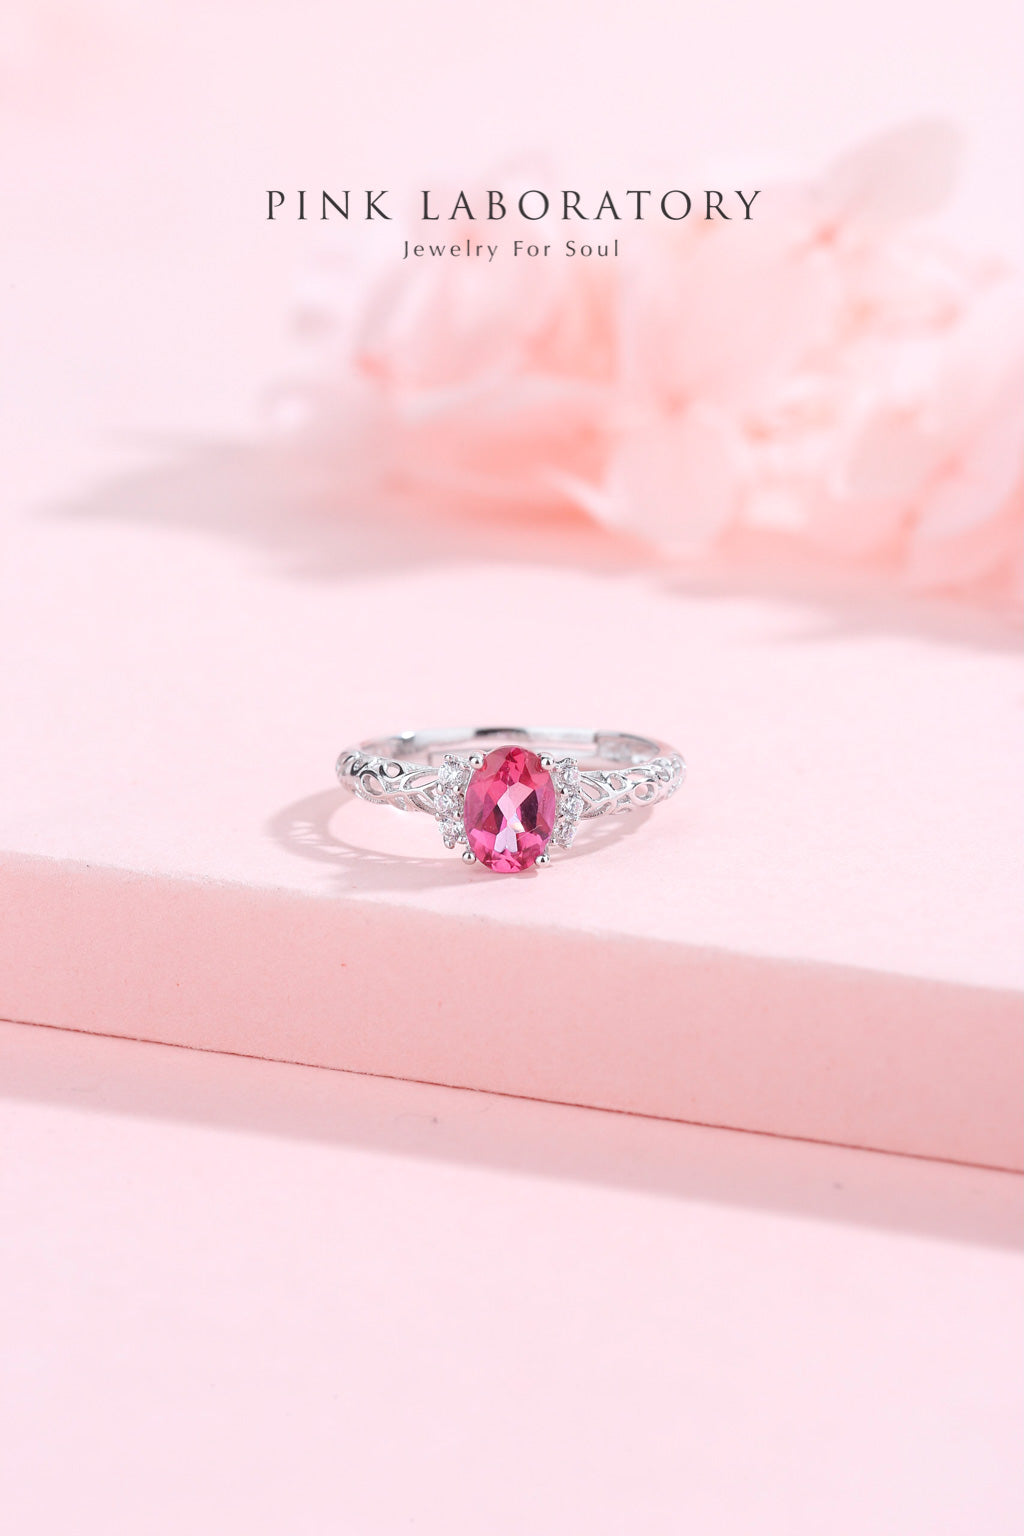 粉紅托帕石925純銀精鍍亮澤白金戒指